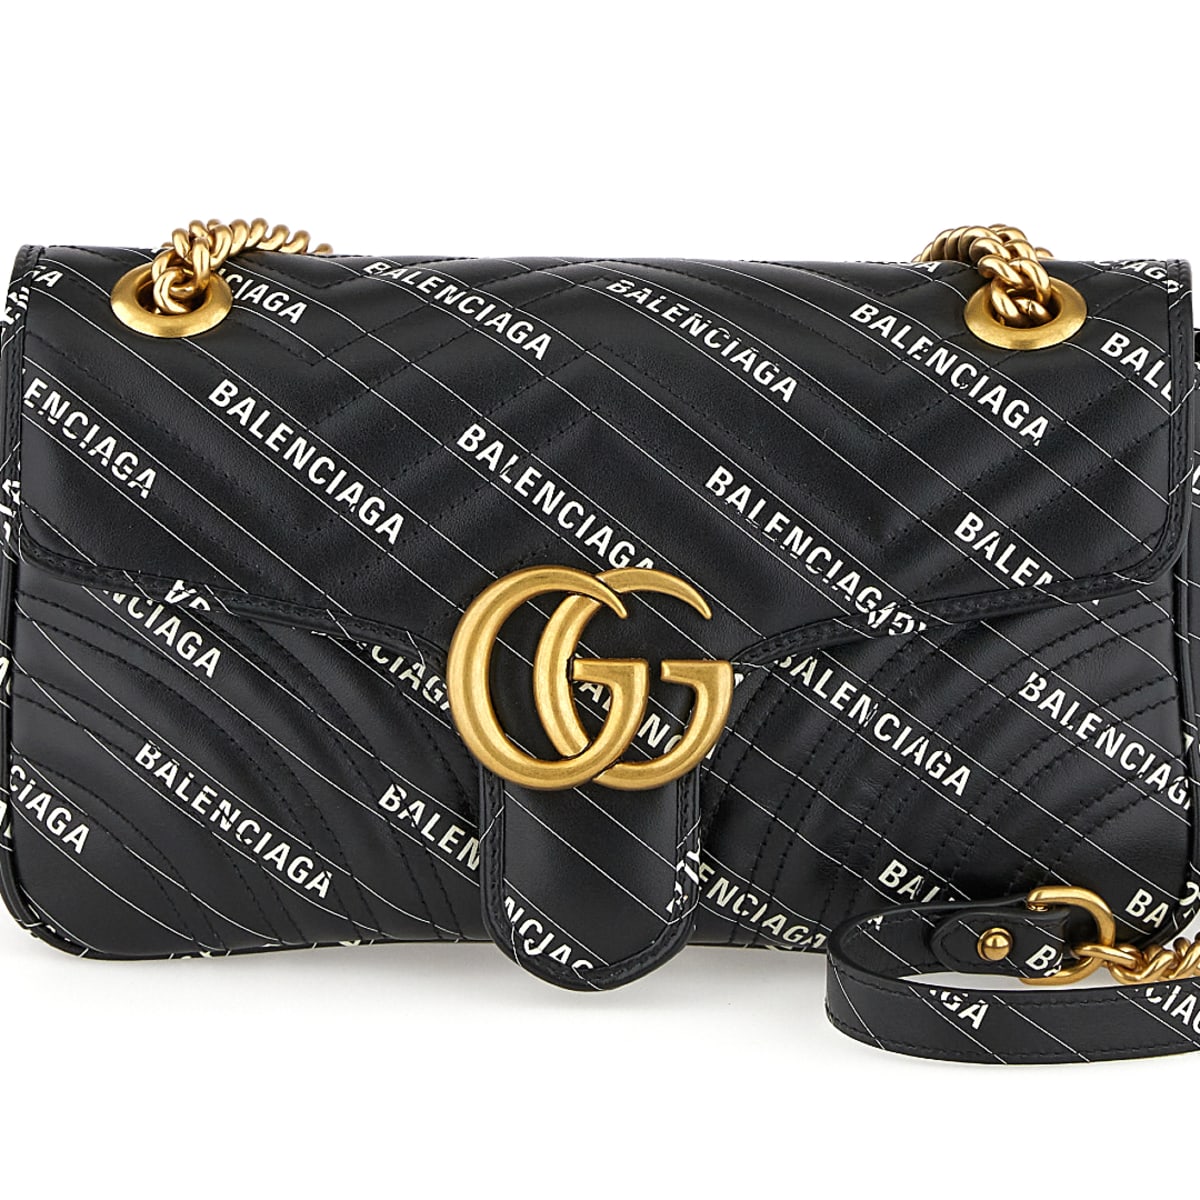 Gucci X Balenciaga The Hacker Project Wallet With Chain BeigeEbony   idusemiduedutr